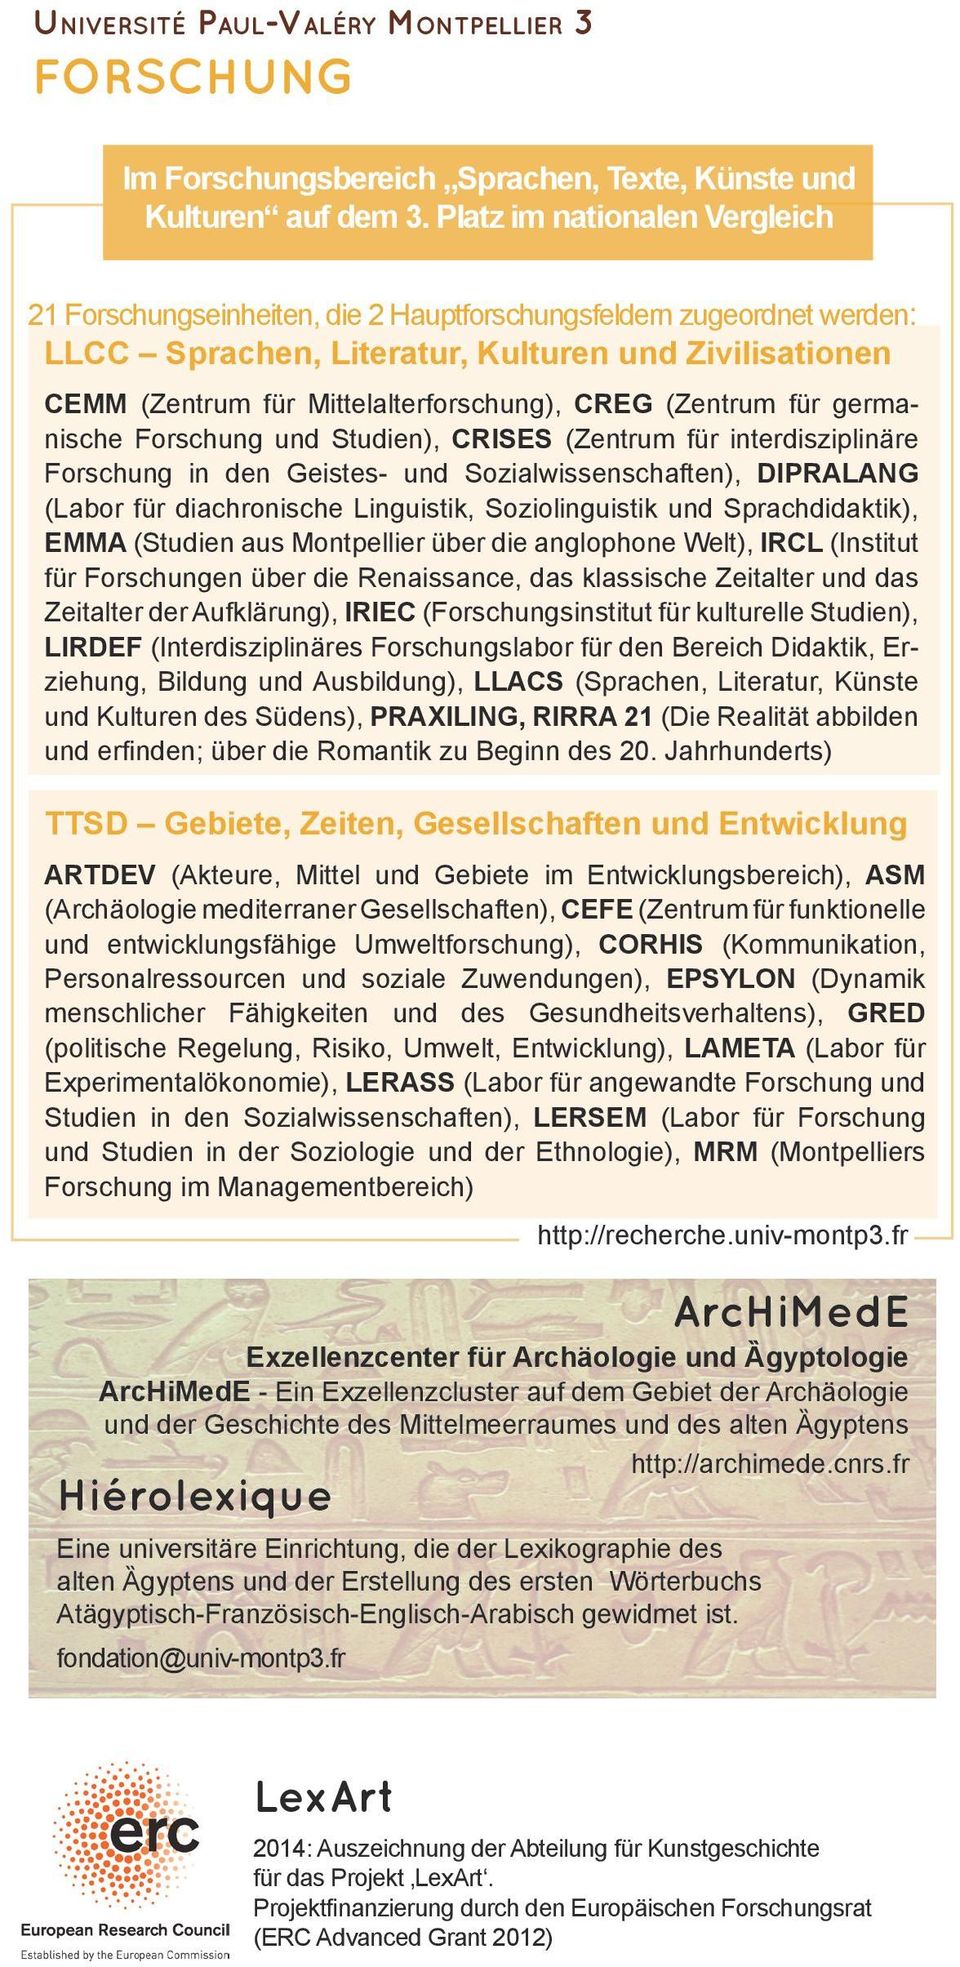 CREG (Zentrum für germanische Forschung und Studien), CRISES (Zentrum für interdisziplinäre Forschung in den Geistes- und Sozialwissenschaften), DIPRALANG (Labor für diachronische Linguistik,